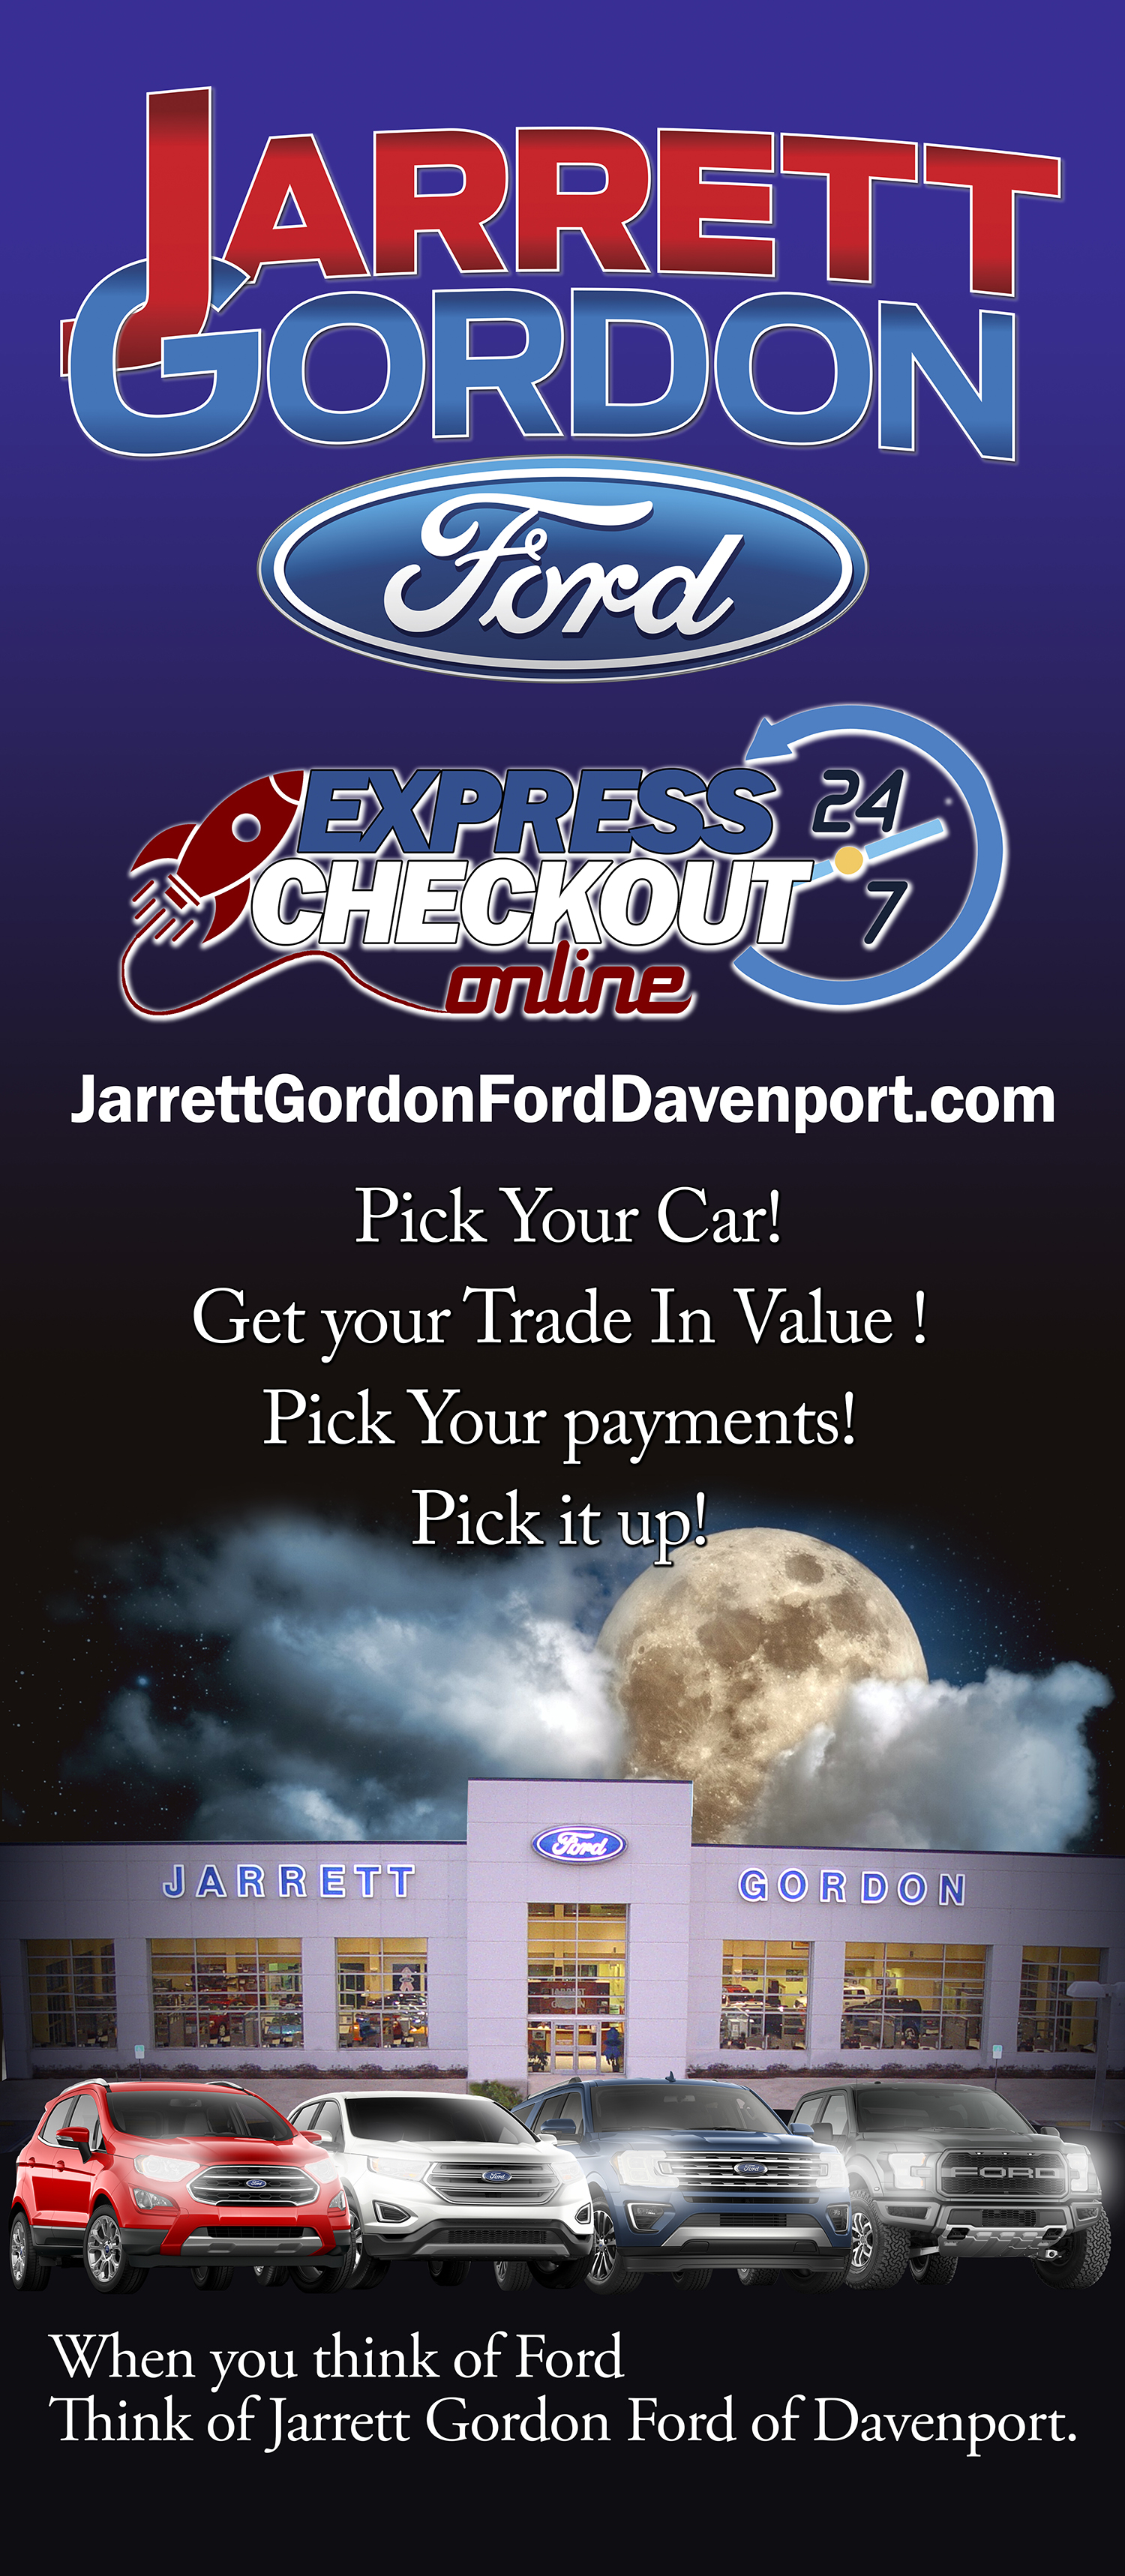 Express Checkout Jarrett #ydealinc.com #ydealinc #ydeal